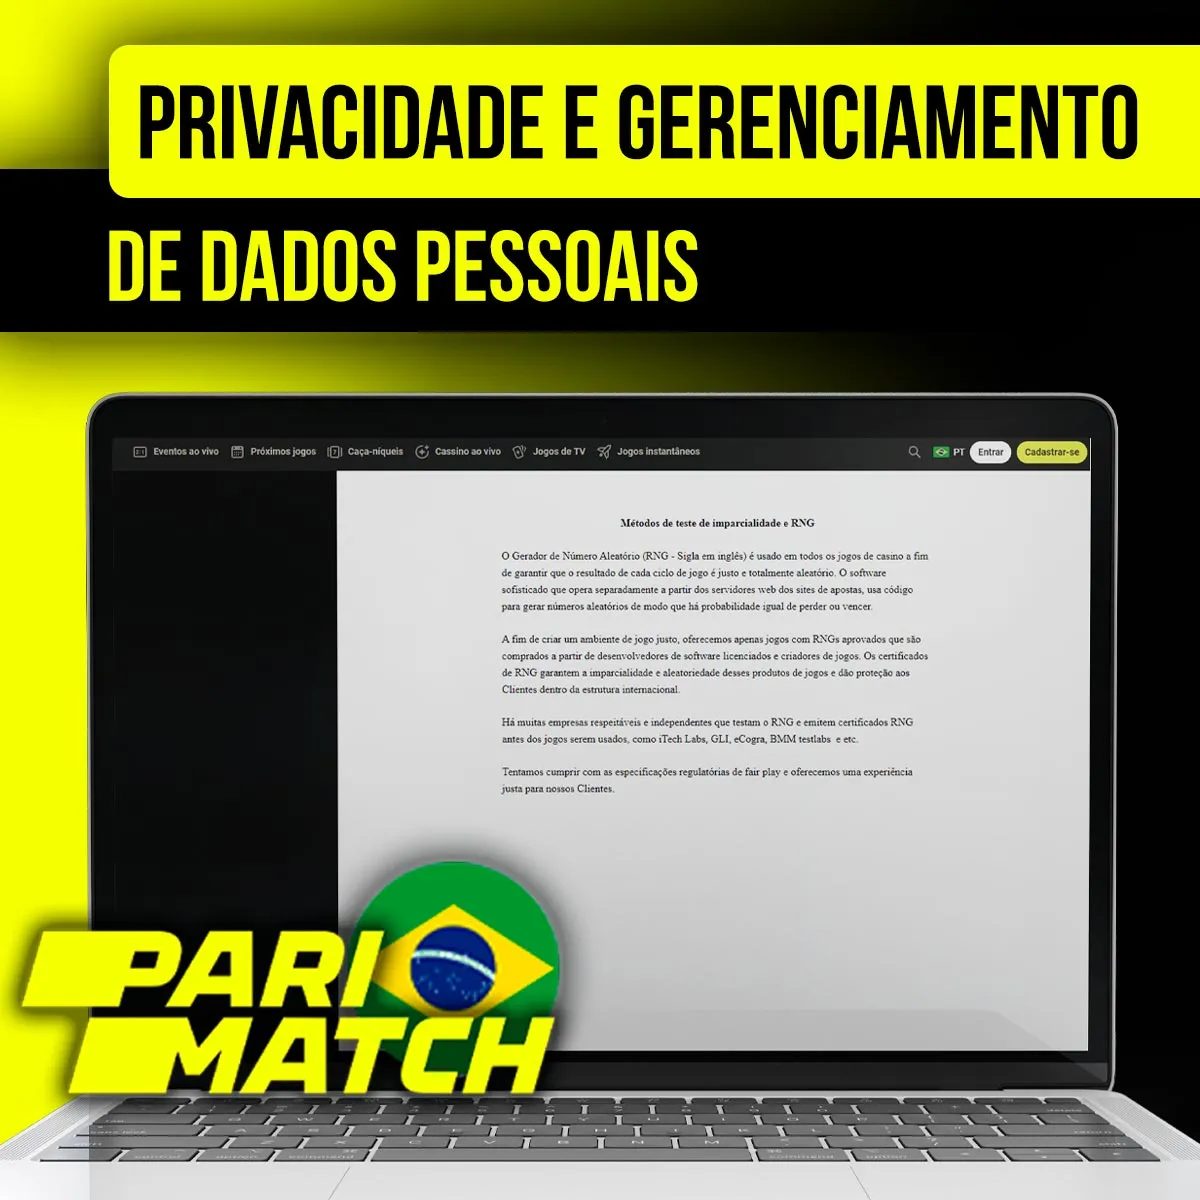 Privacidade e gestão de dados pessoais na empresa de apostas Parimatch no Brasil